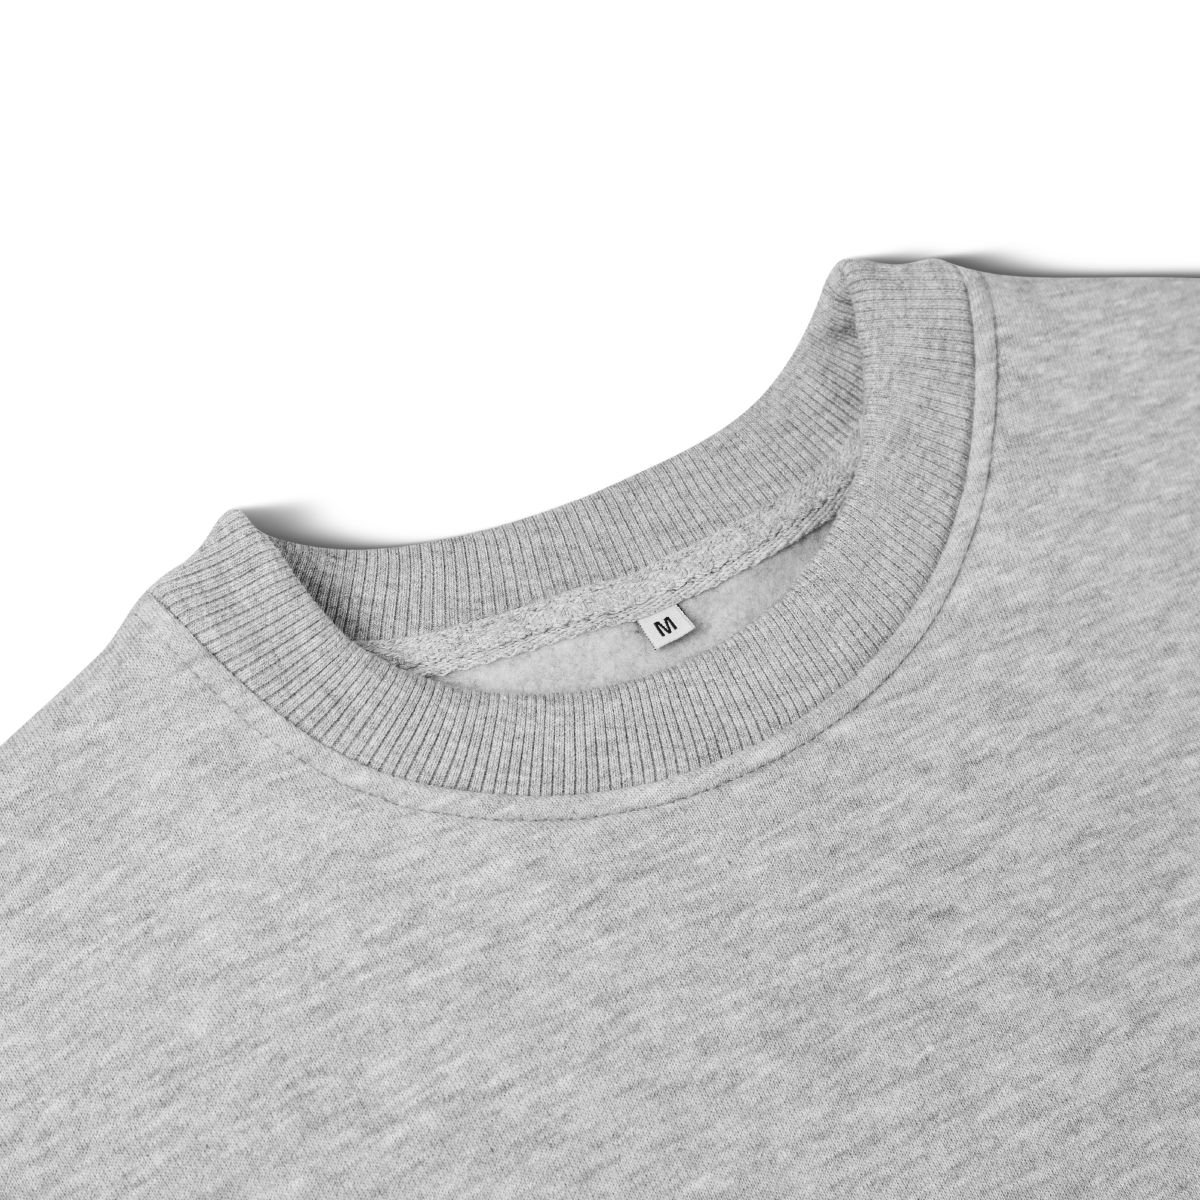 Світшот Base Soft Sweatshirt. Вільний стиль. Колір Сірий/Gray. Розмір S 7